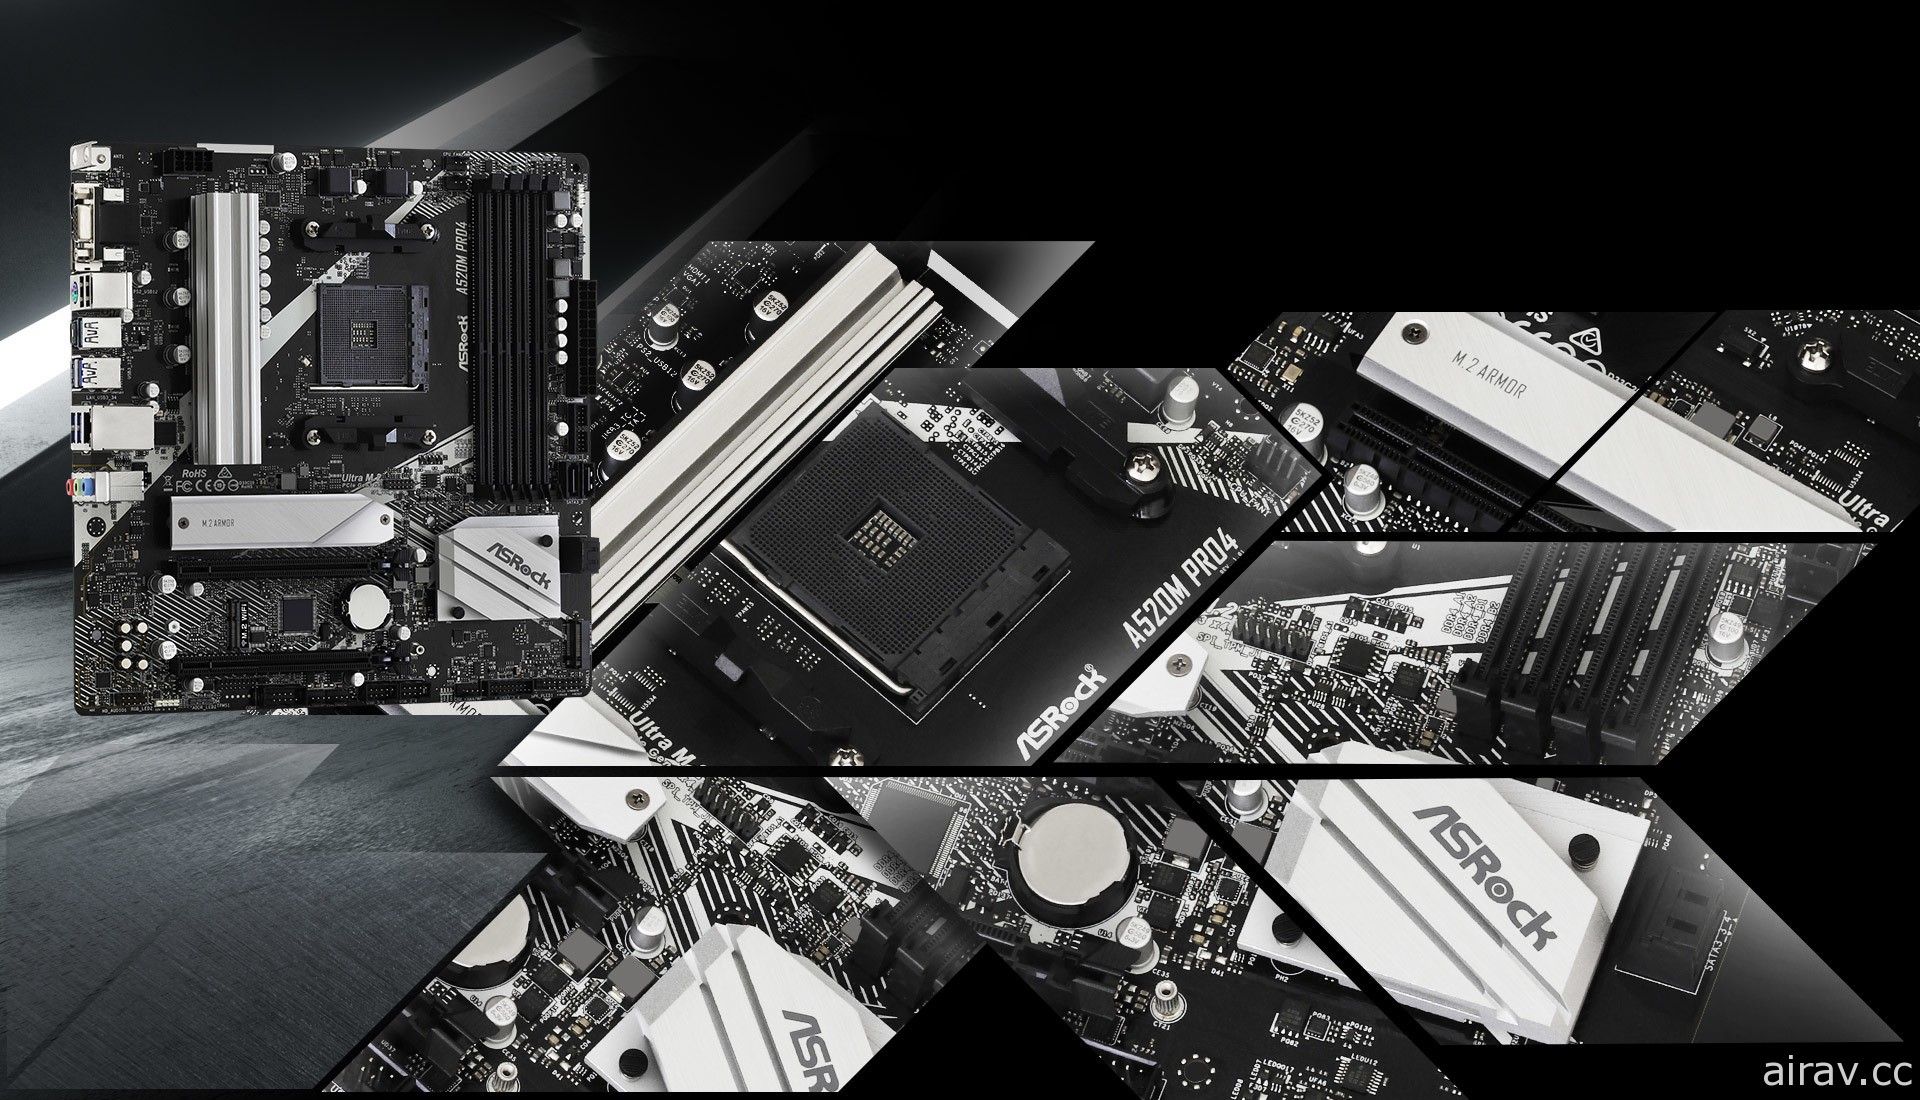 华擎科技发表 A520 系列主机板 支援 AMD 第三代 Ryzen 桌上型处理器